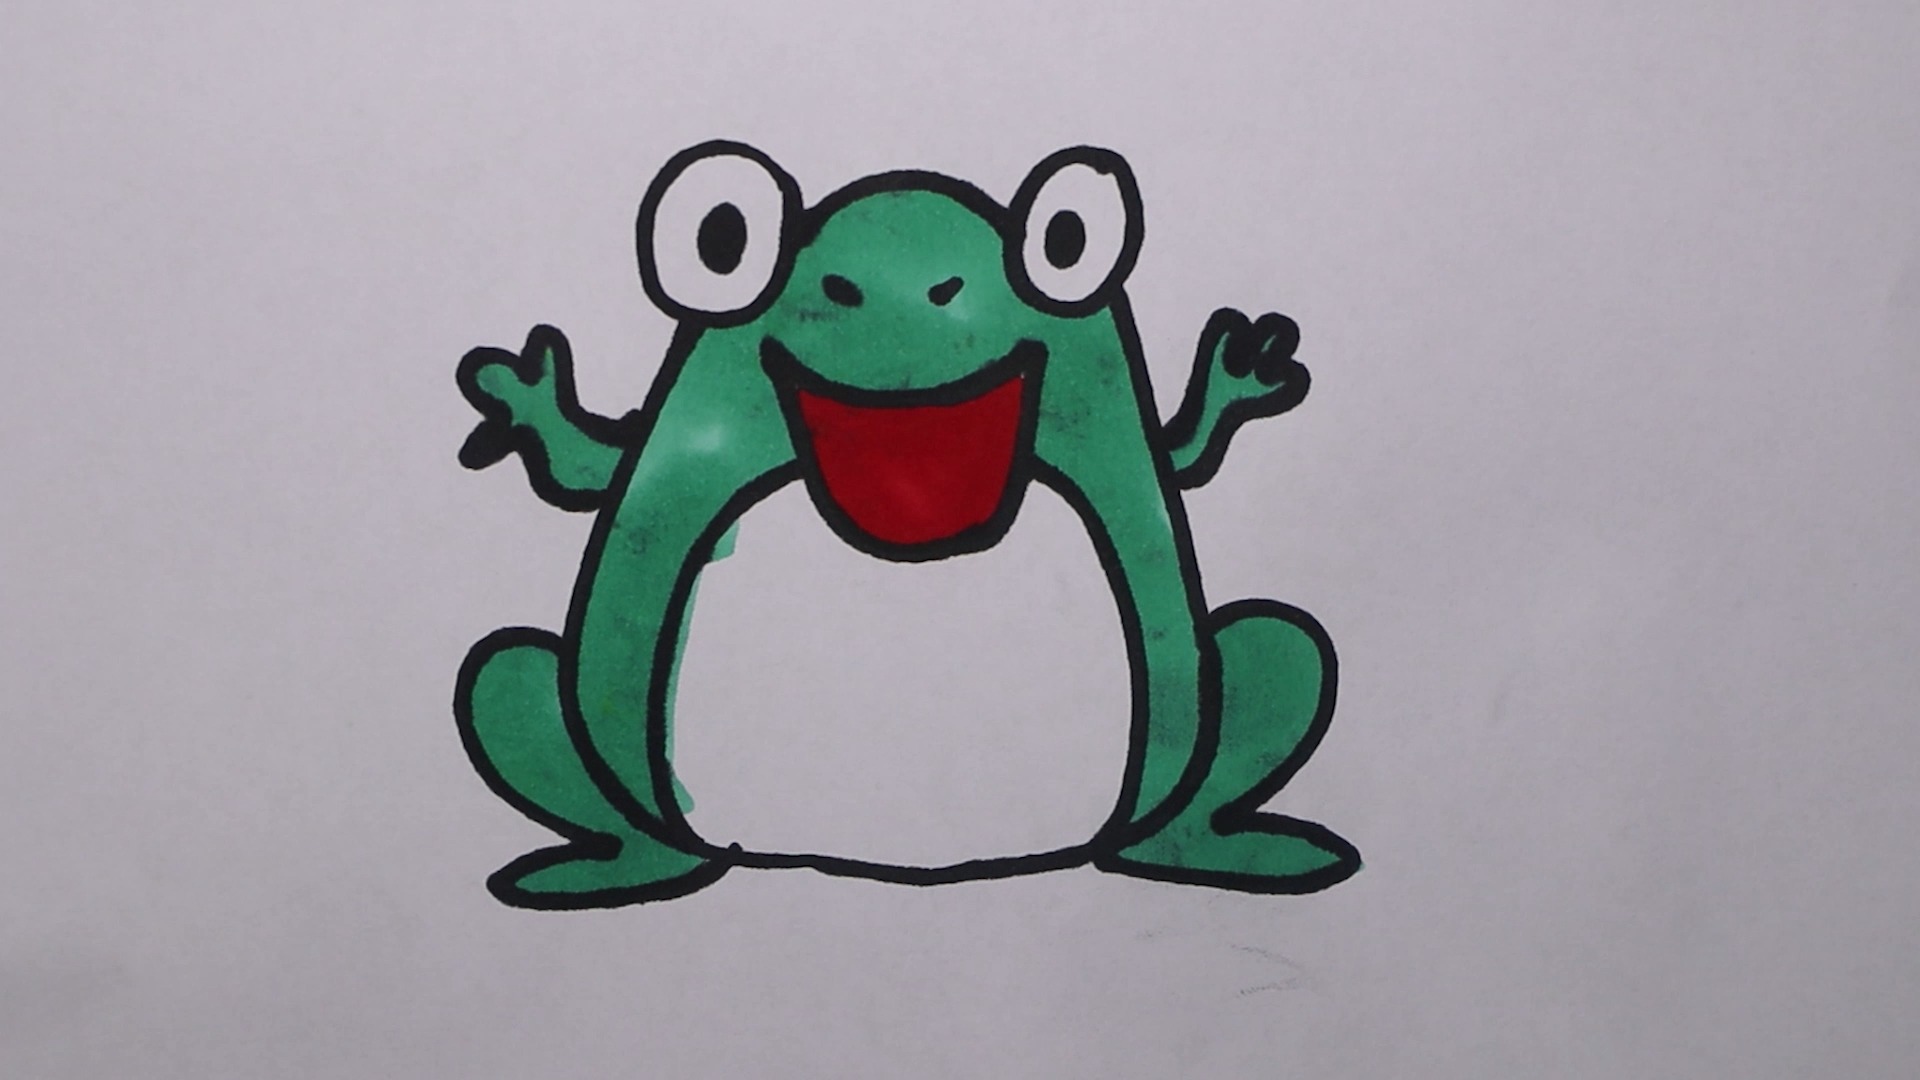 小青蛙简画图图片